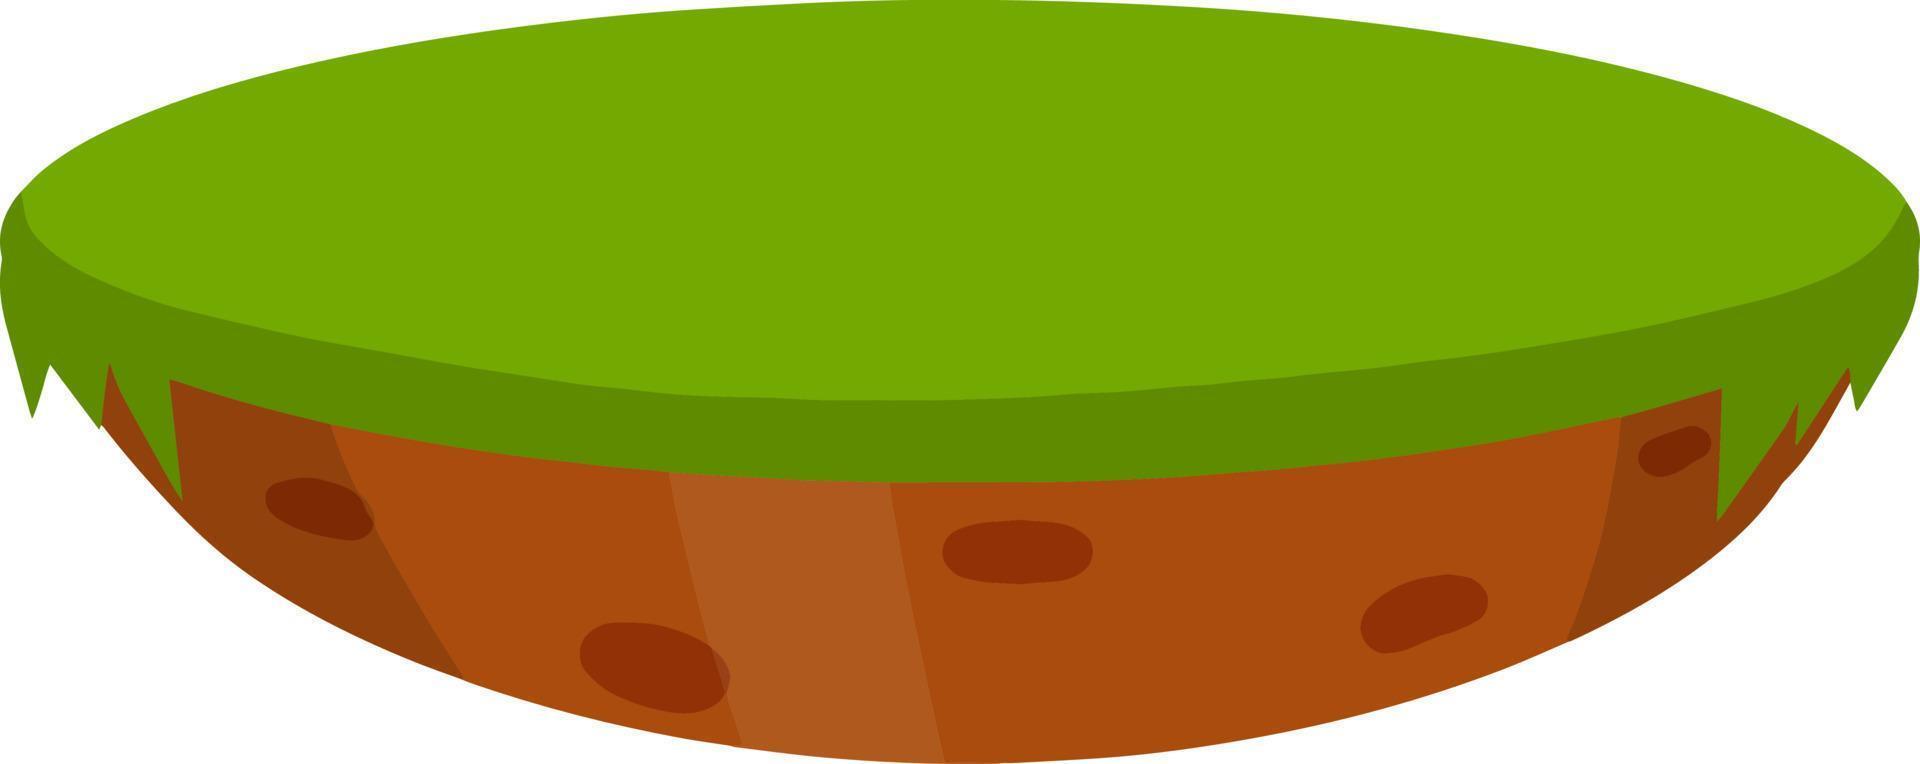 césped verde con hierba. campo y pradera de verano. plataforma con suelo para el juego y la aplicación. ilustración plana de dibujos animados vector